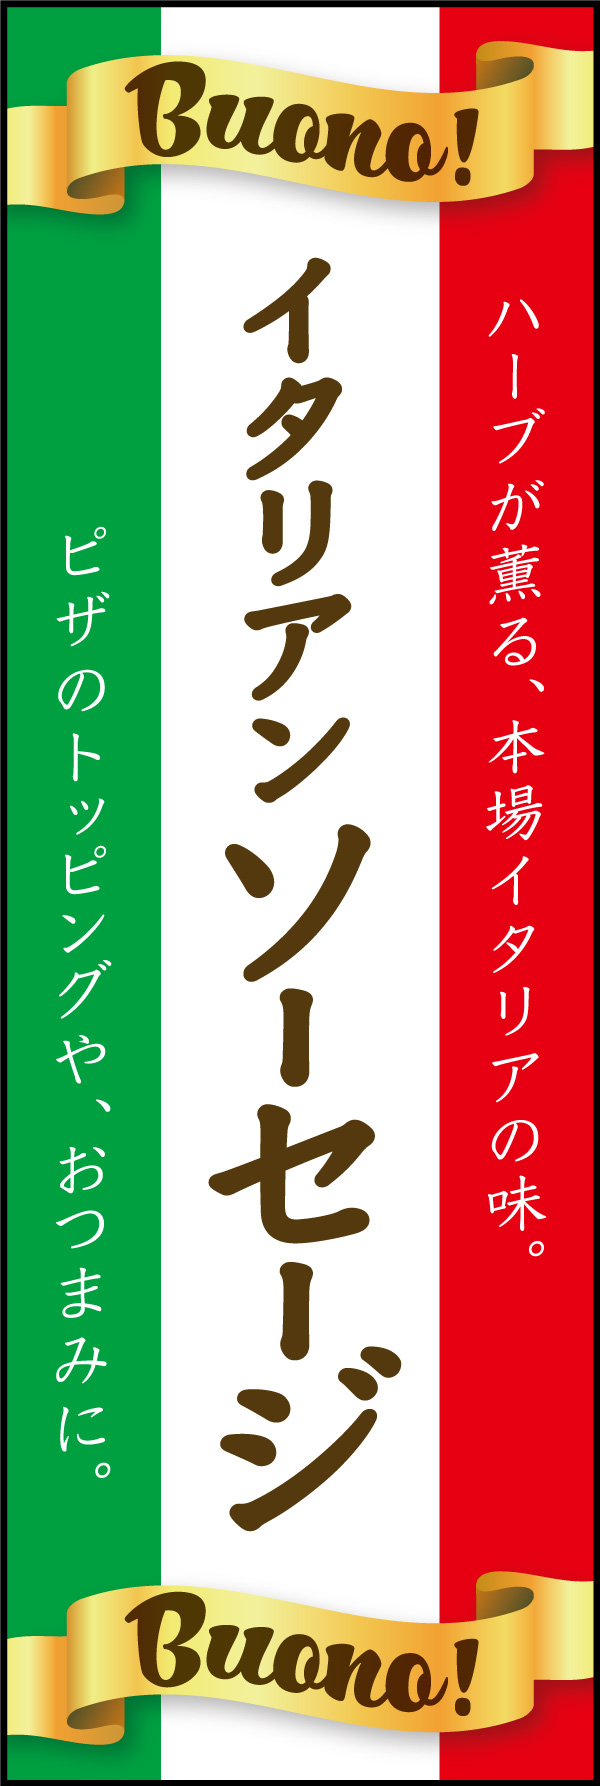 イタリアソーセージ 01 「イタリアンソーセージ」ののぼりです。イタリアの国旗をイメージしたデザインで、イタリア独自製法のイタリアンソーセージを表現しました。(Y.M)